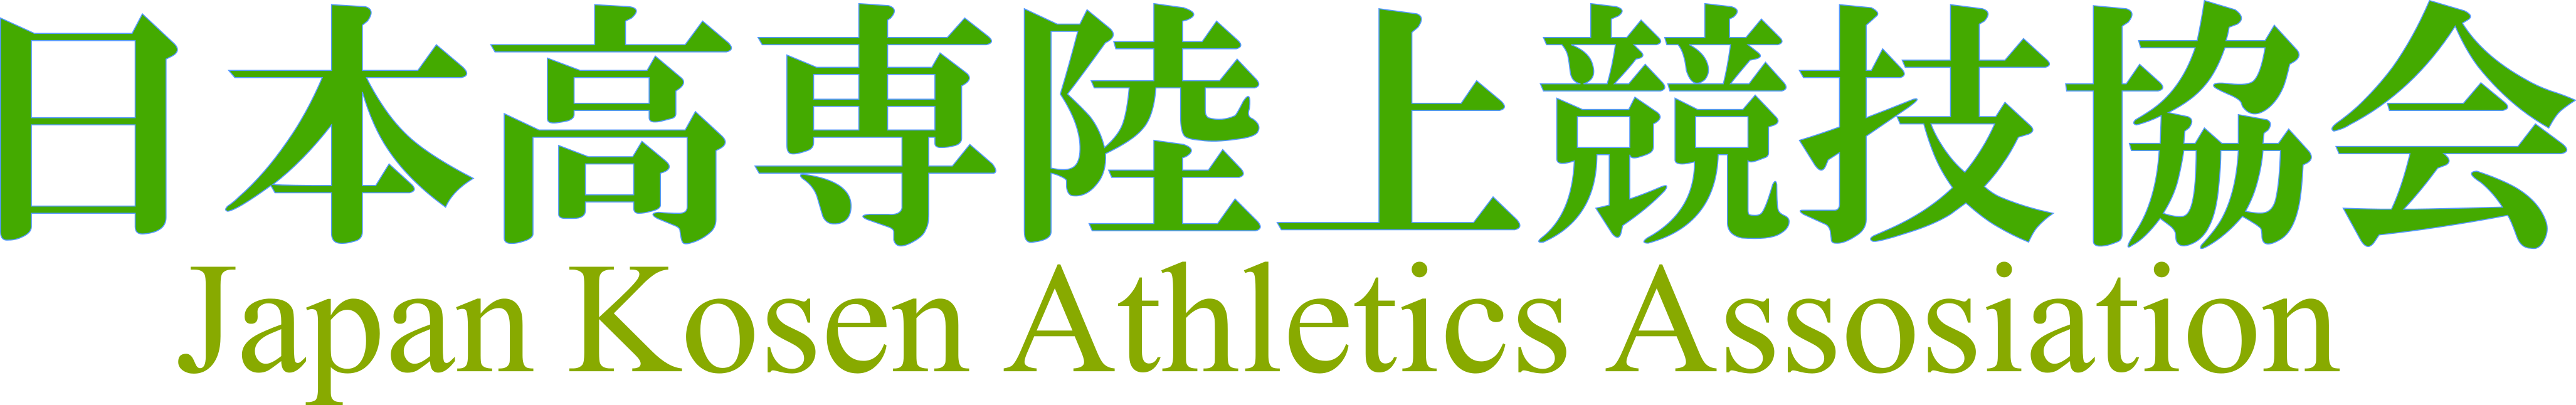 Japan Kosen Athletics Assosiation